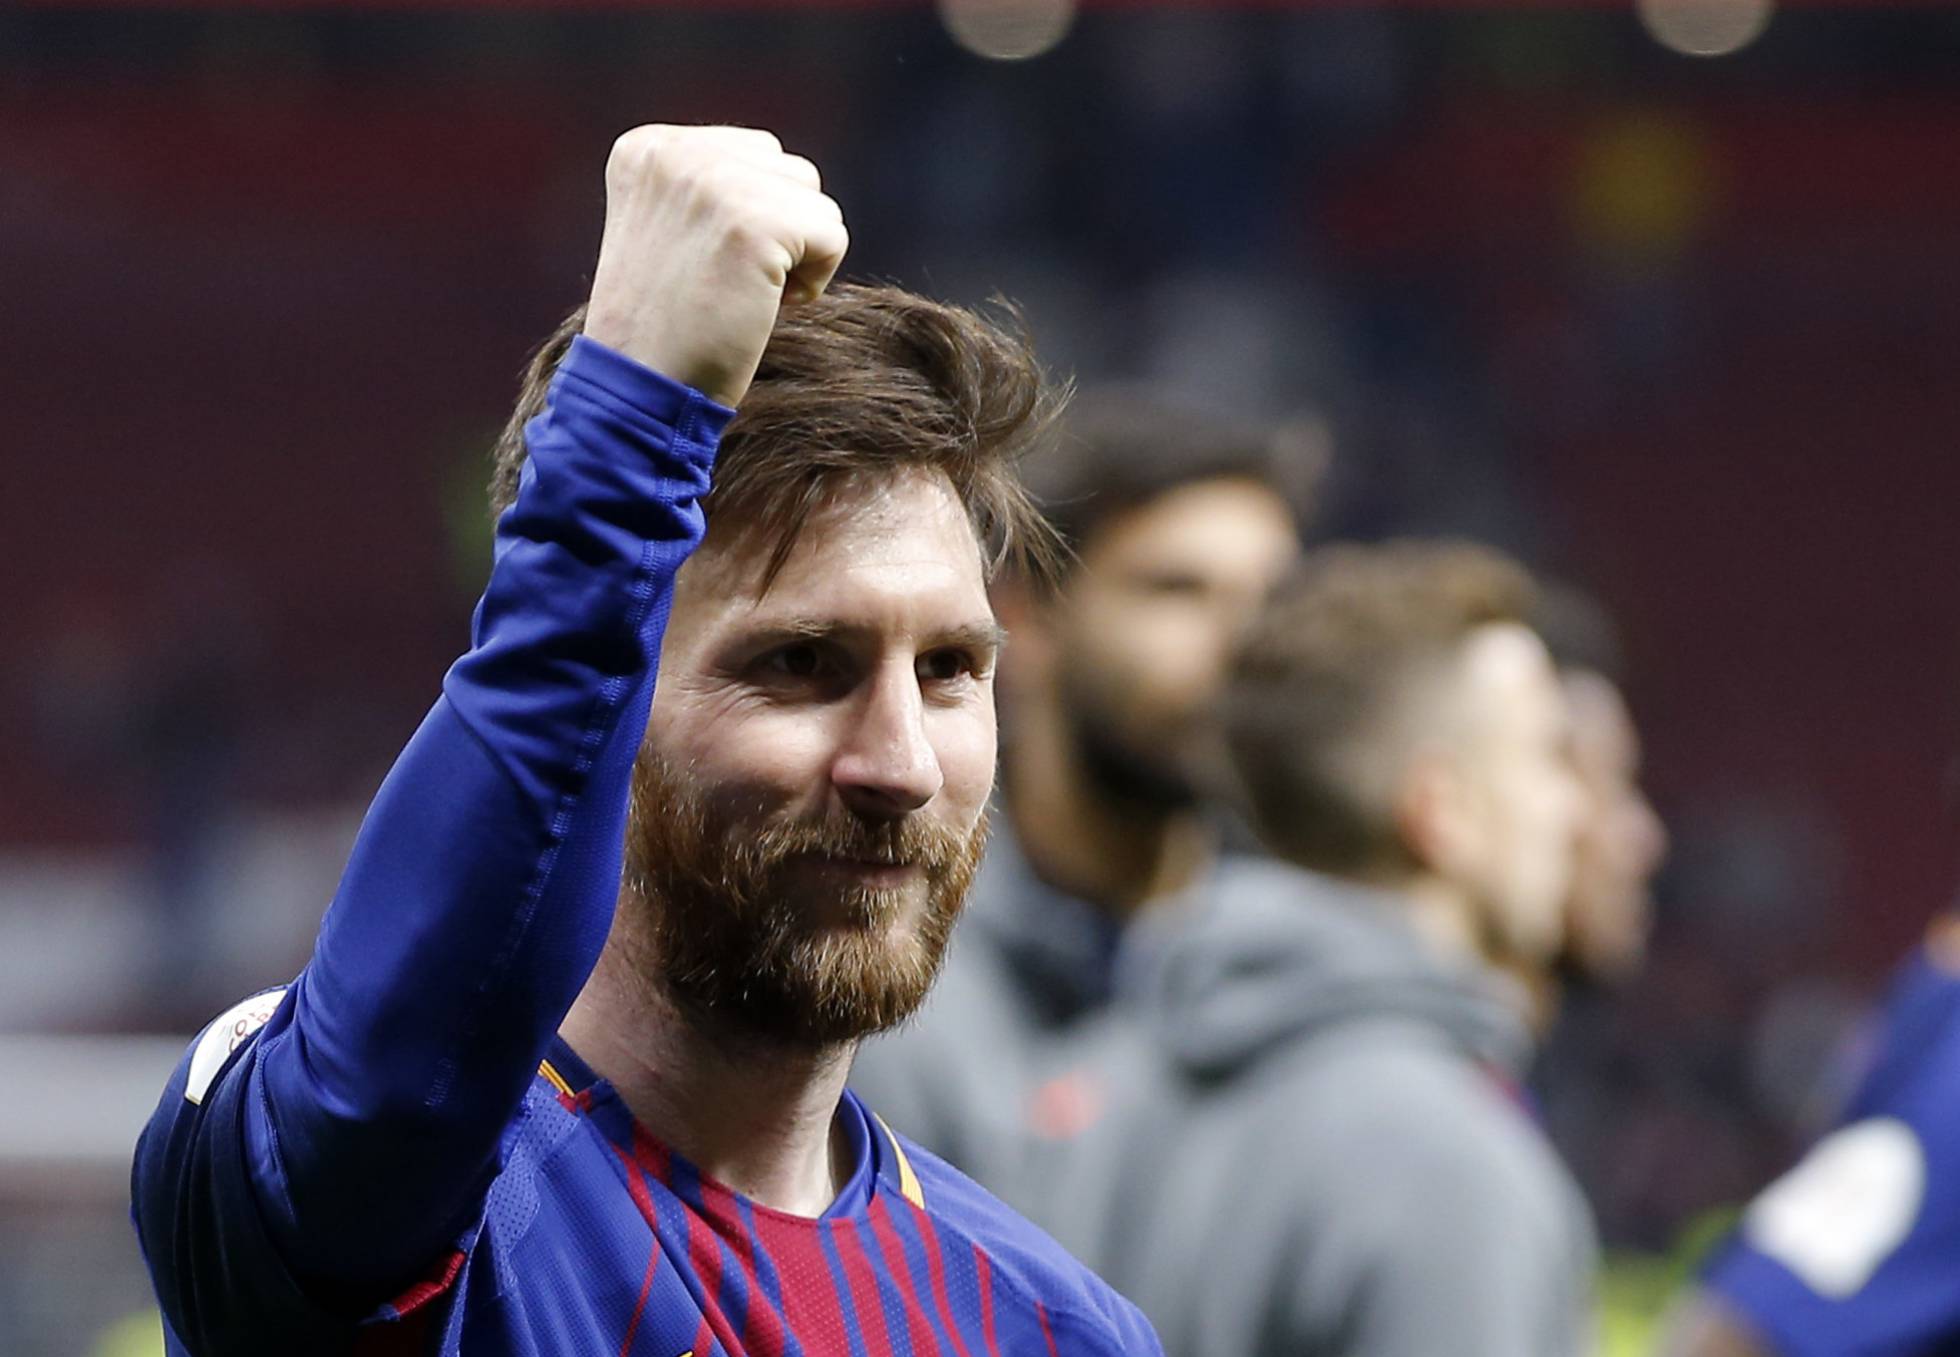 Messi podrá registrar su nombre como marca deportiva